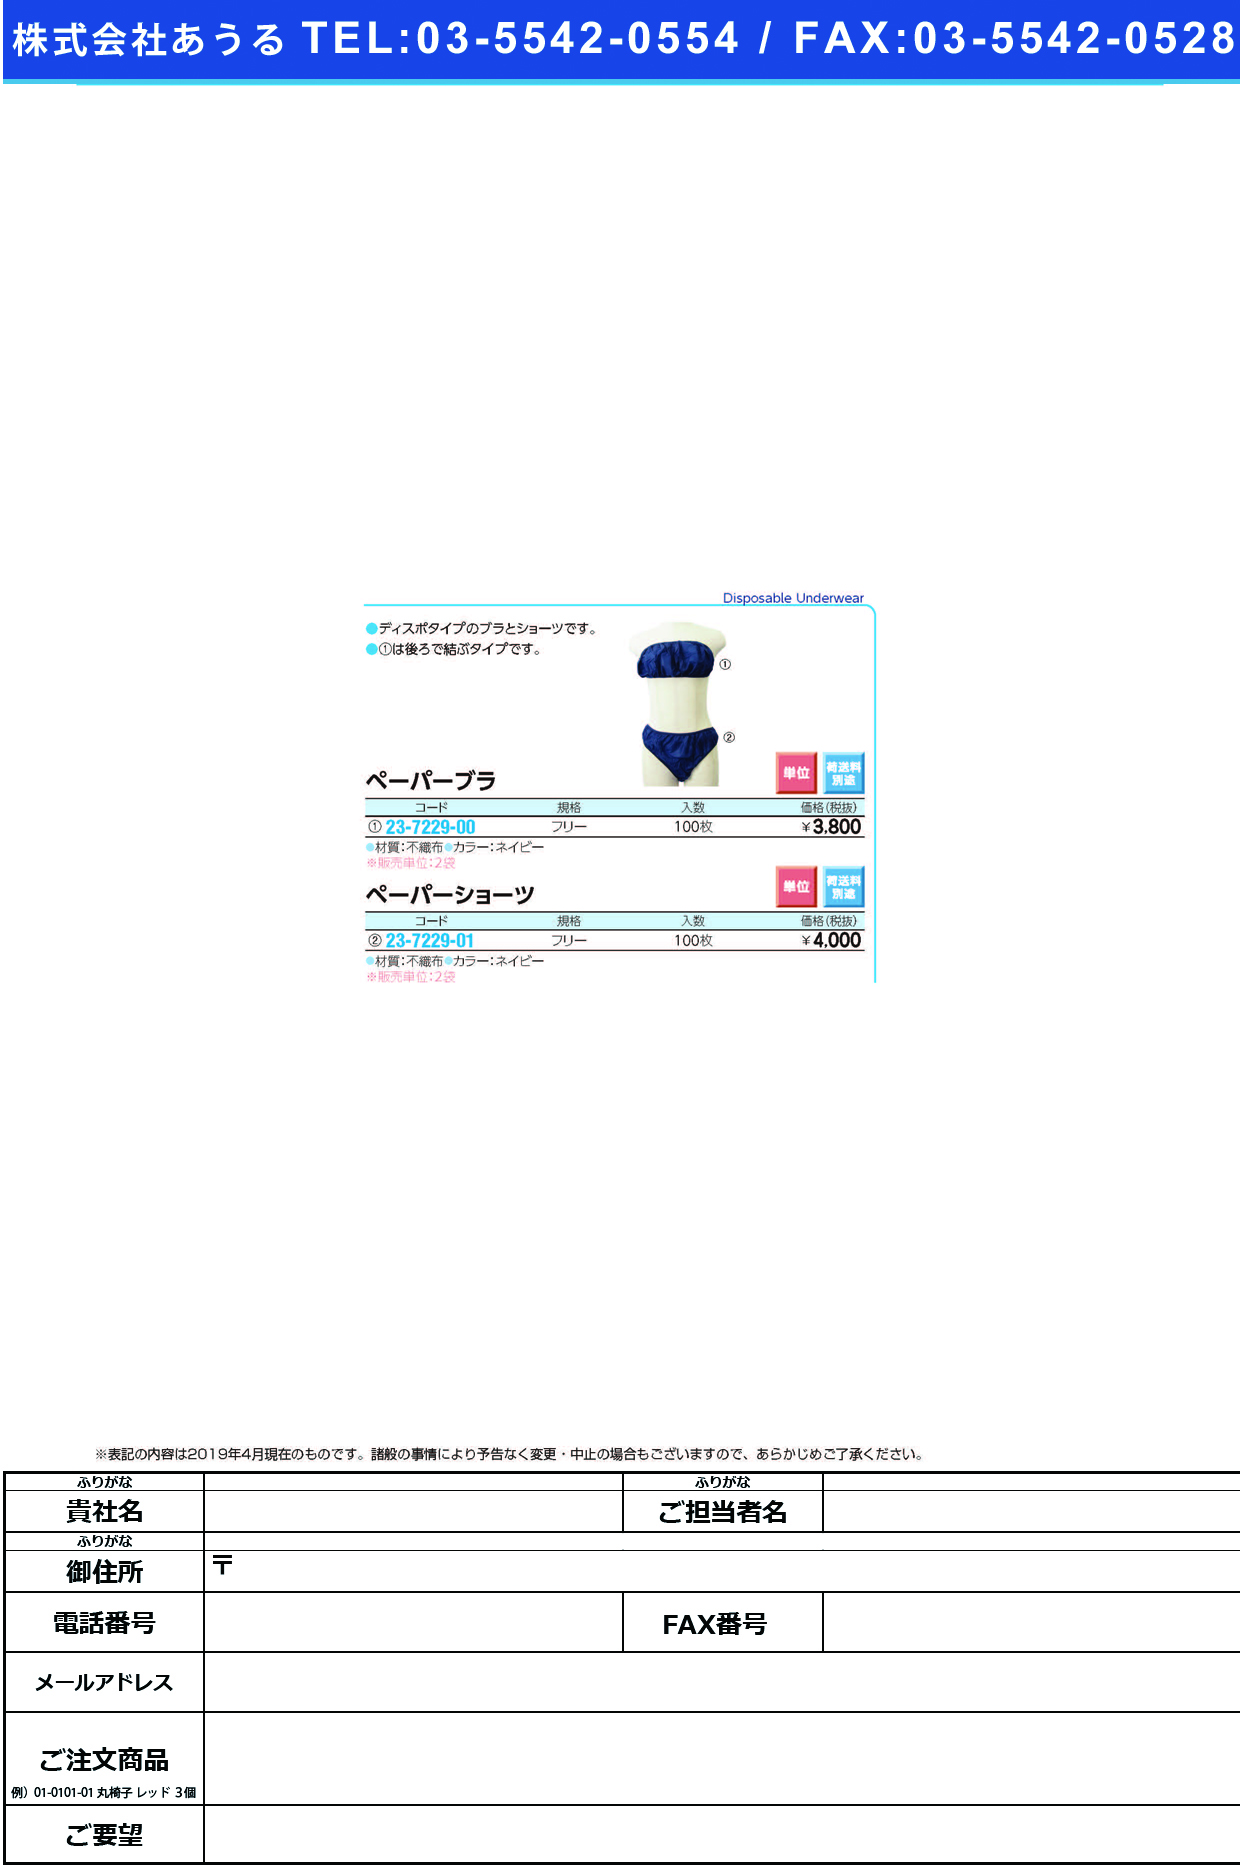 (23-7229-00)ペーパーブラ ﾈｲﾋﾞｰ(100ﾏｲｲﾘ) ﾍﾟｰﾊﾟｰﾌﾞﾗ【2袋単位】【2019年カタログ商品】